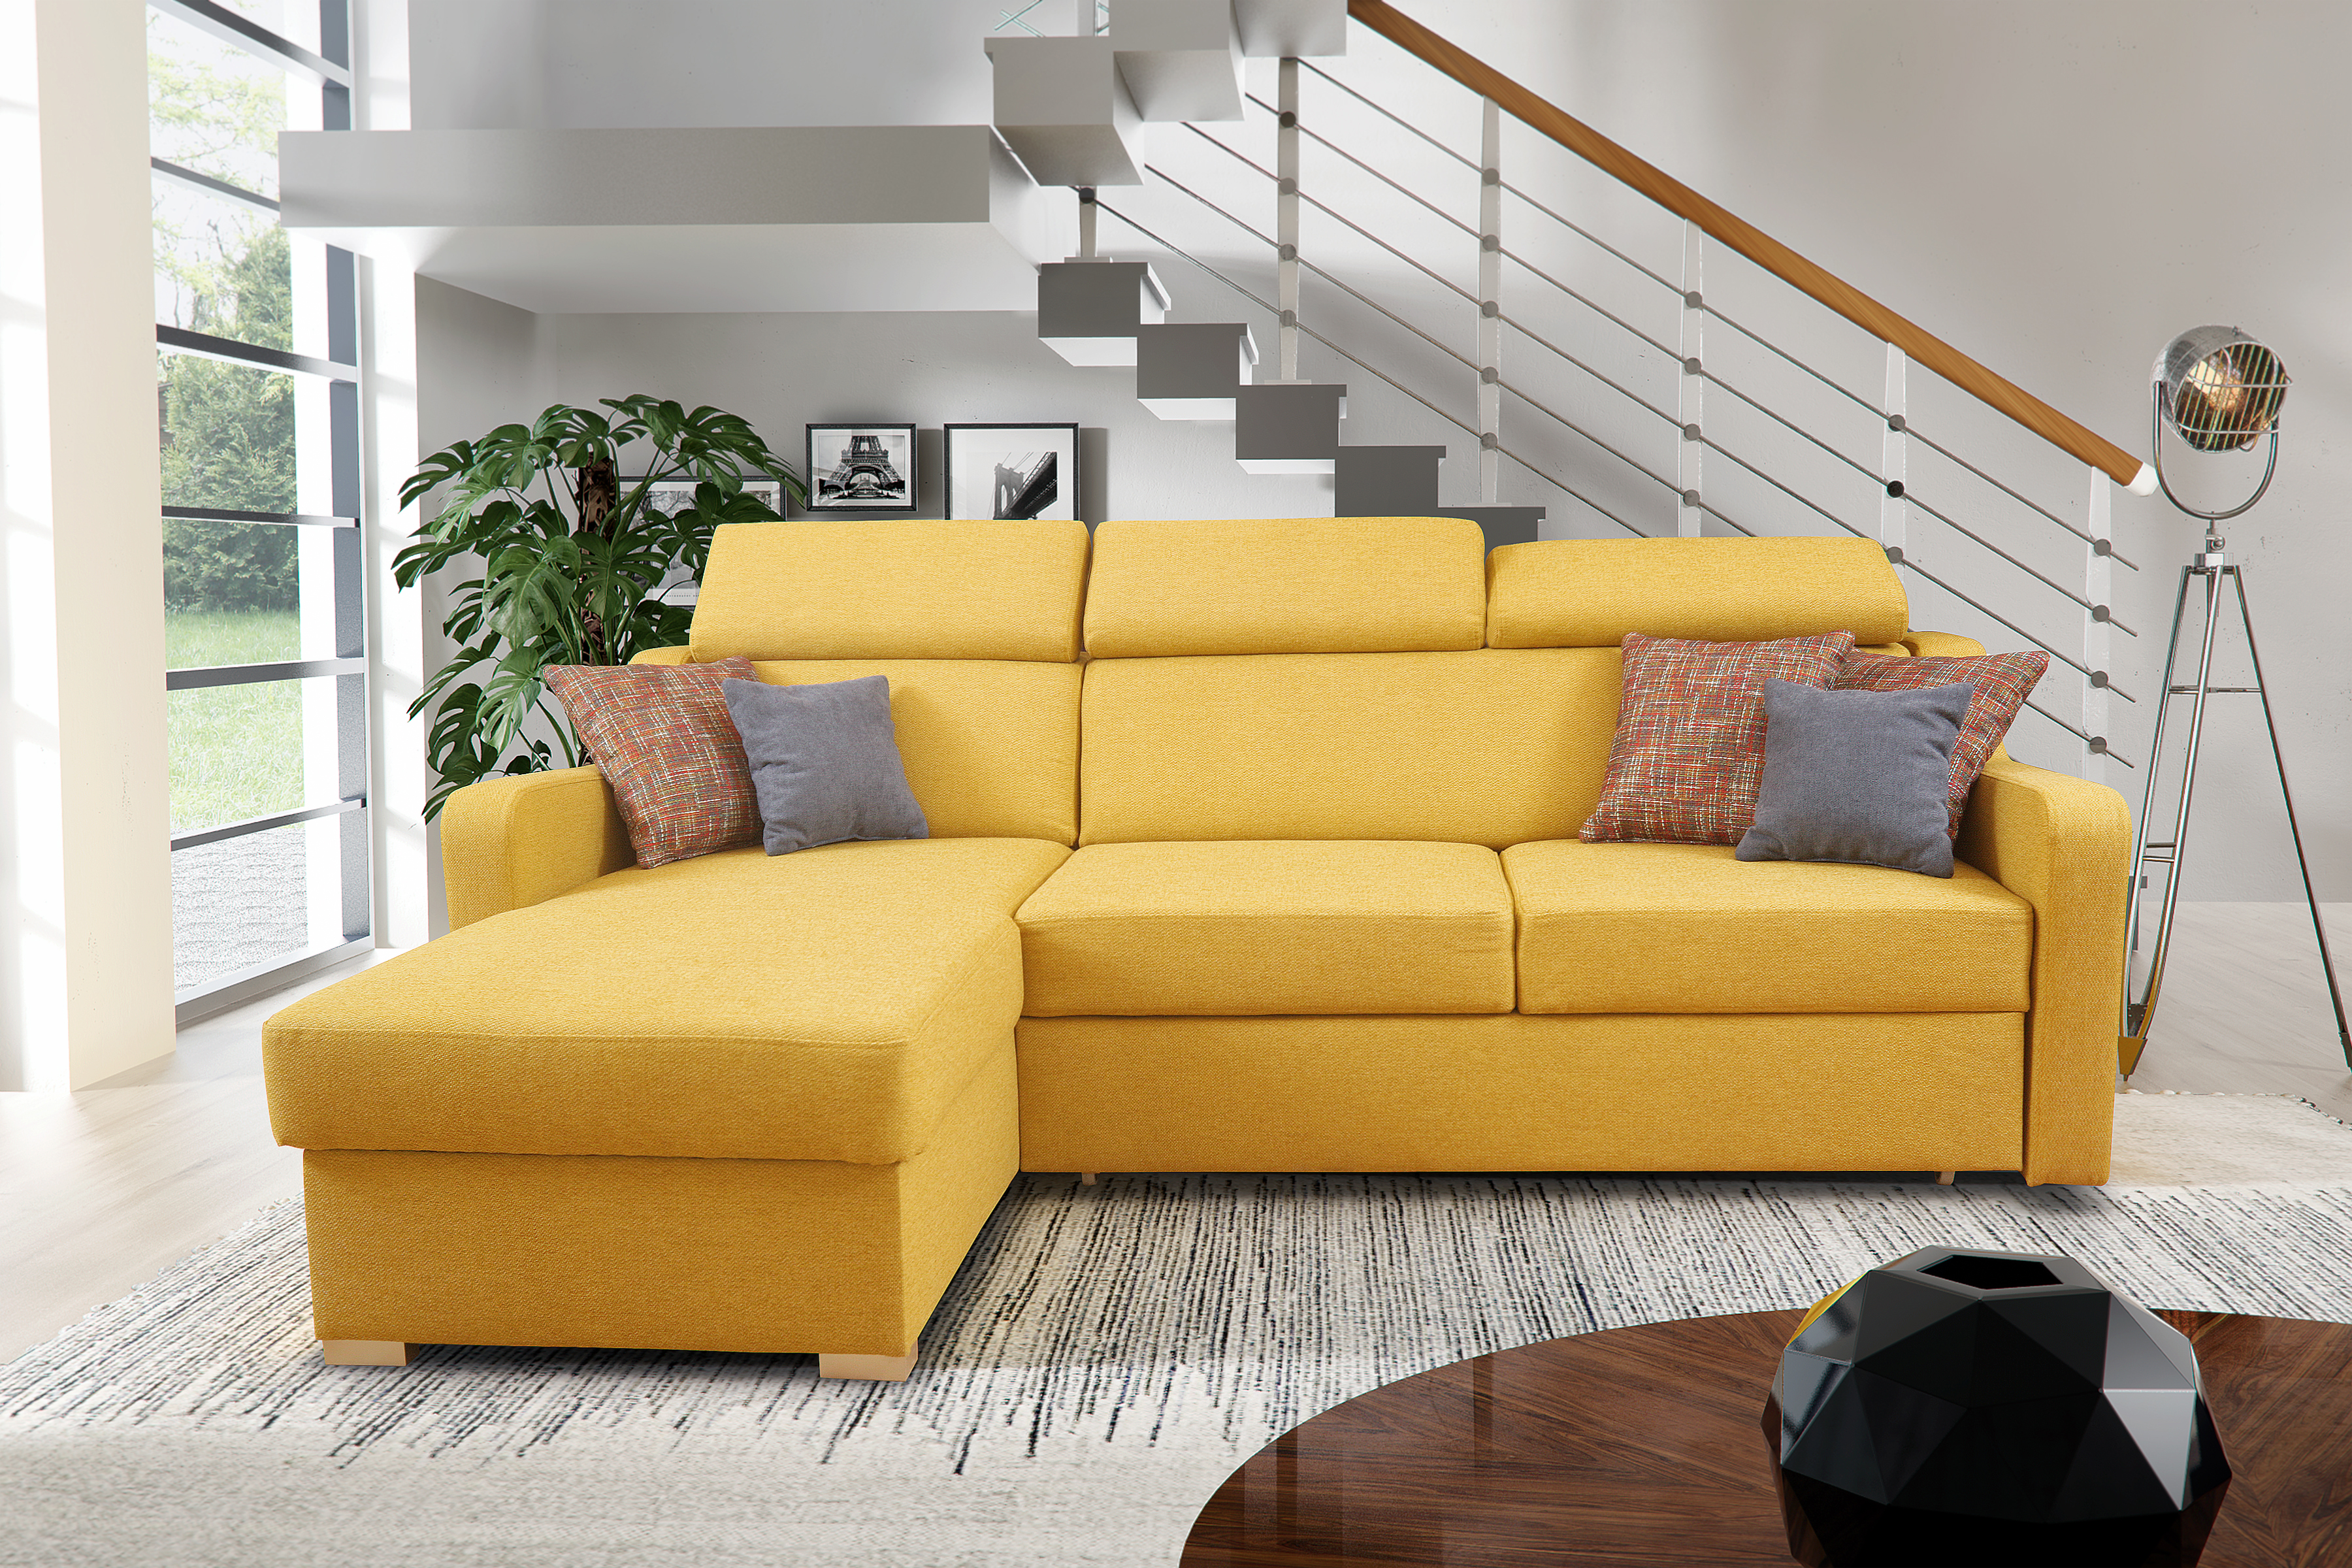 Мебель диваны купить в москве. Диван. Мягкий угловой диван в гостиную. Желтый диван в интерьере. Диван угловой раскладной.